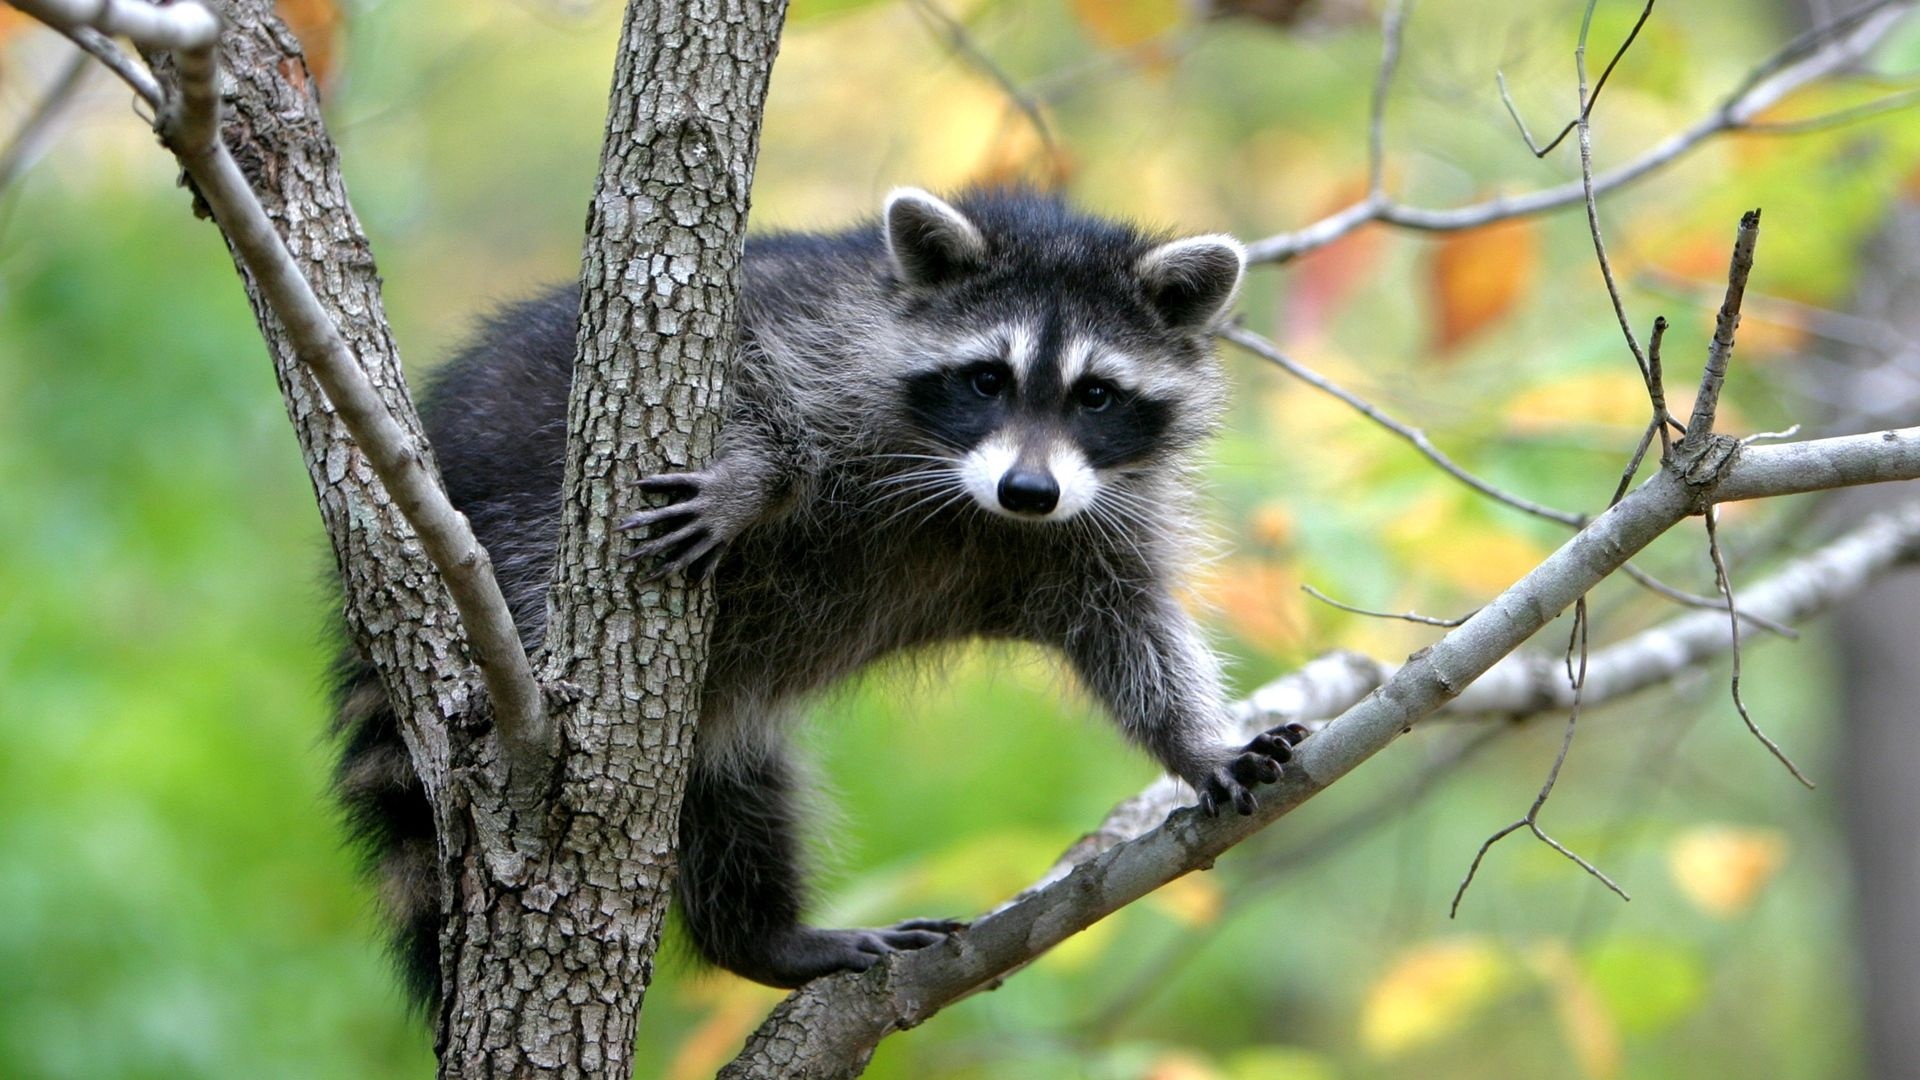 Mischievous raccoon, Wildlife photography, Nature's beauty, Animal lover, 1920x1080 Full HD Desktop